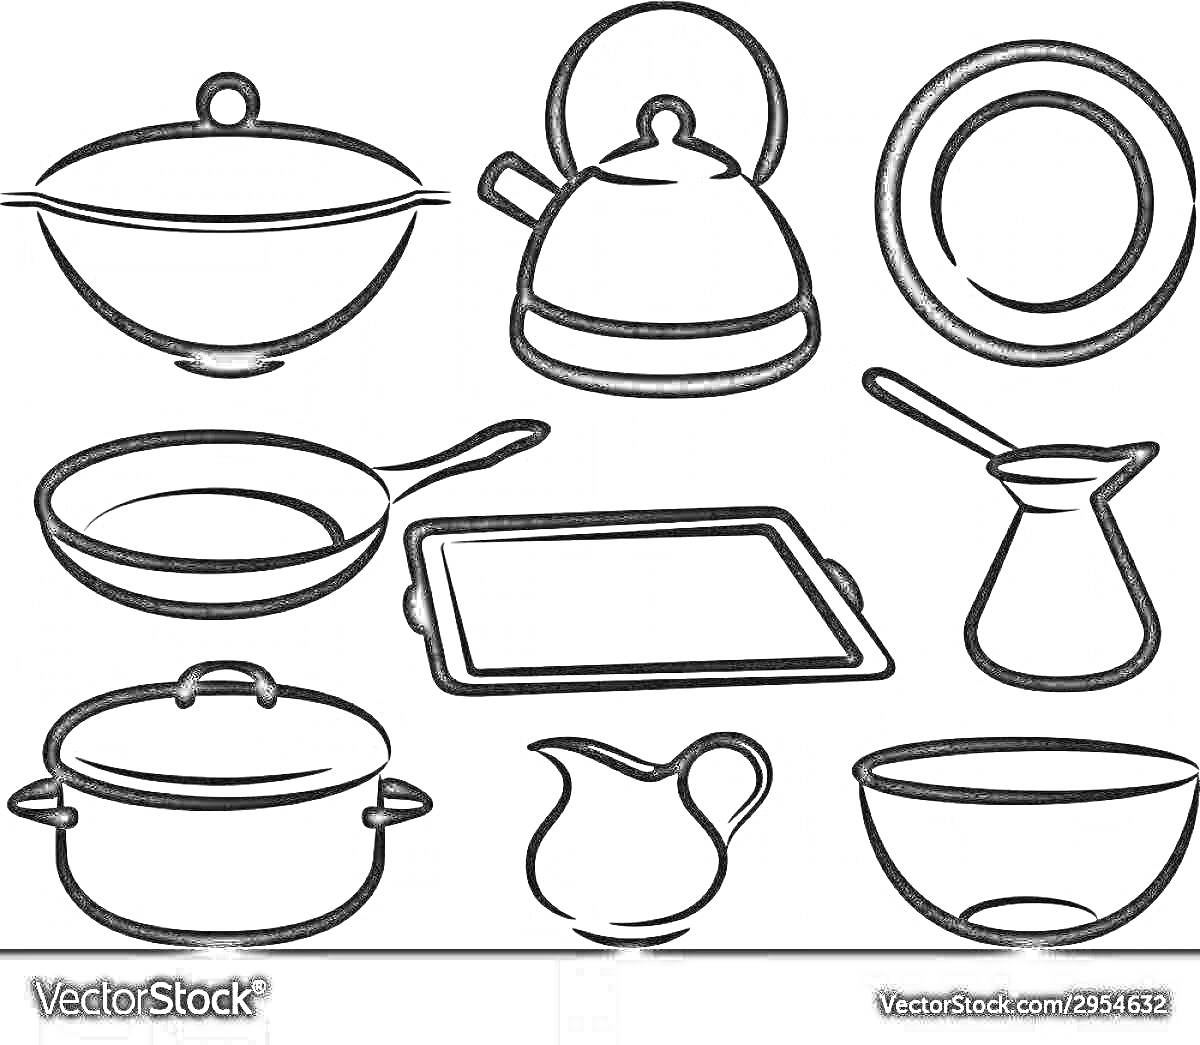 Раскраска Кастрюля с крышкой, чайник, тарелка, сковорода, противень, турка, кастрюля без крышки, молочник, салатница